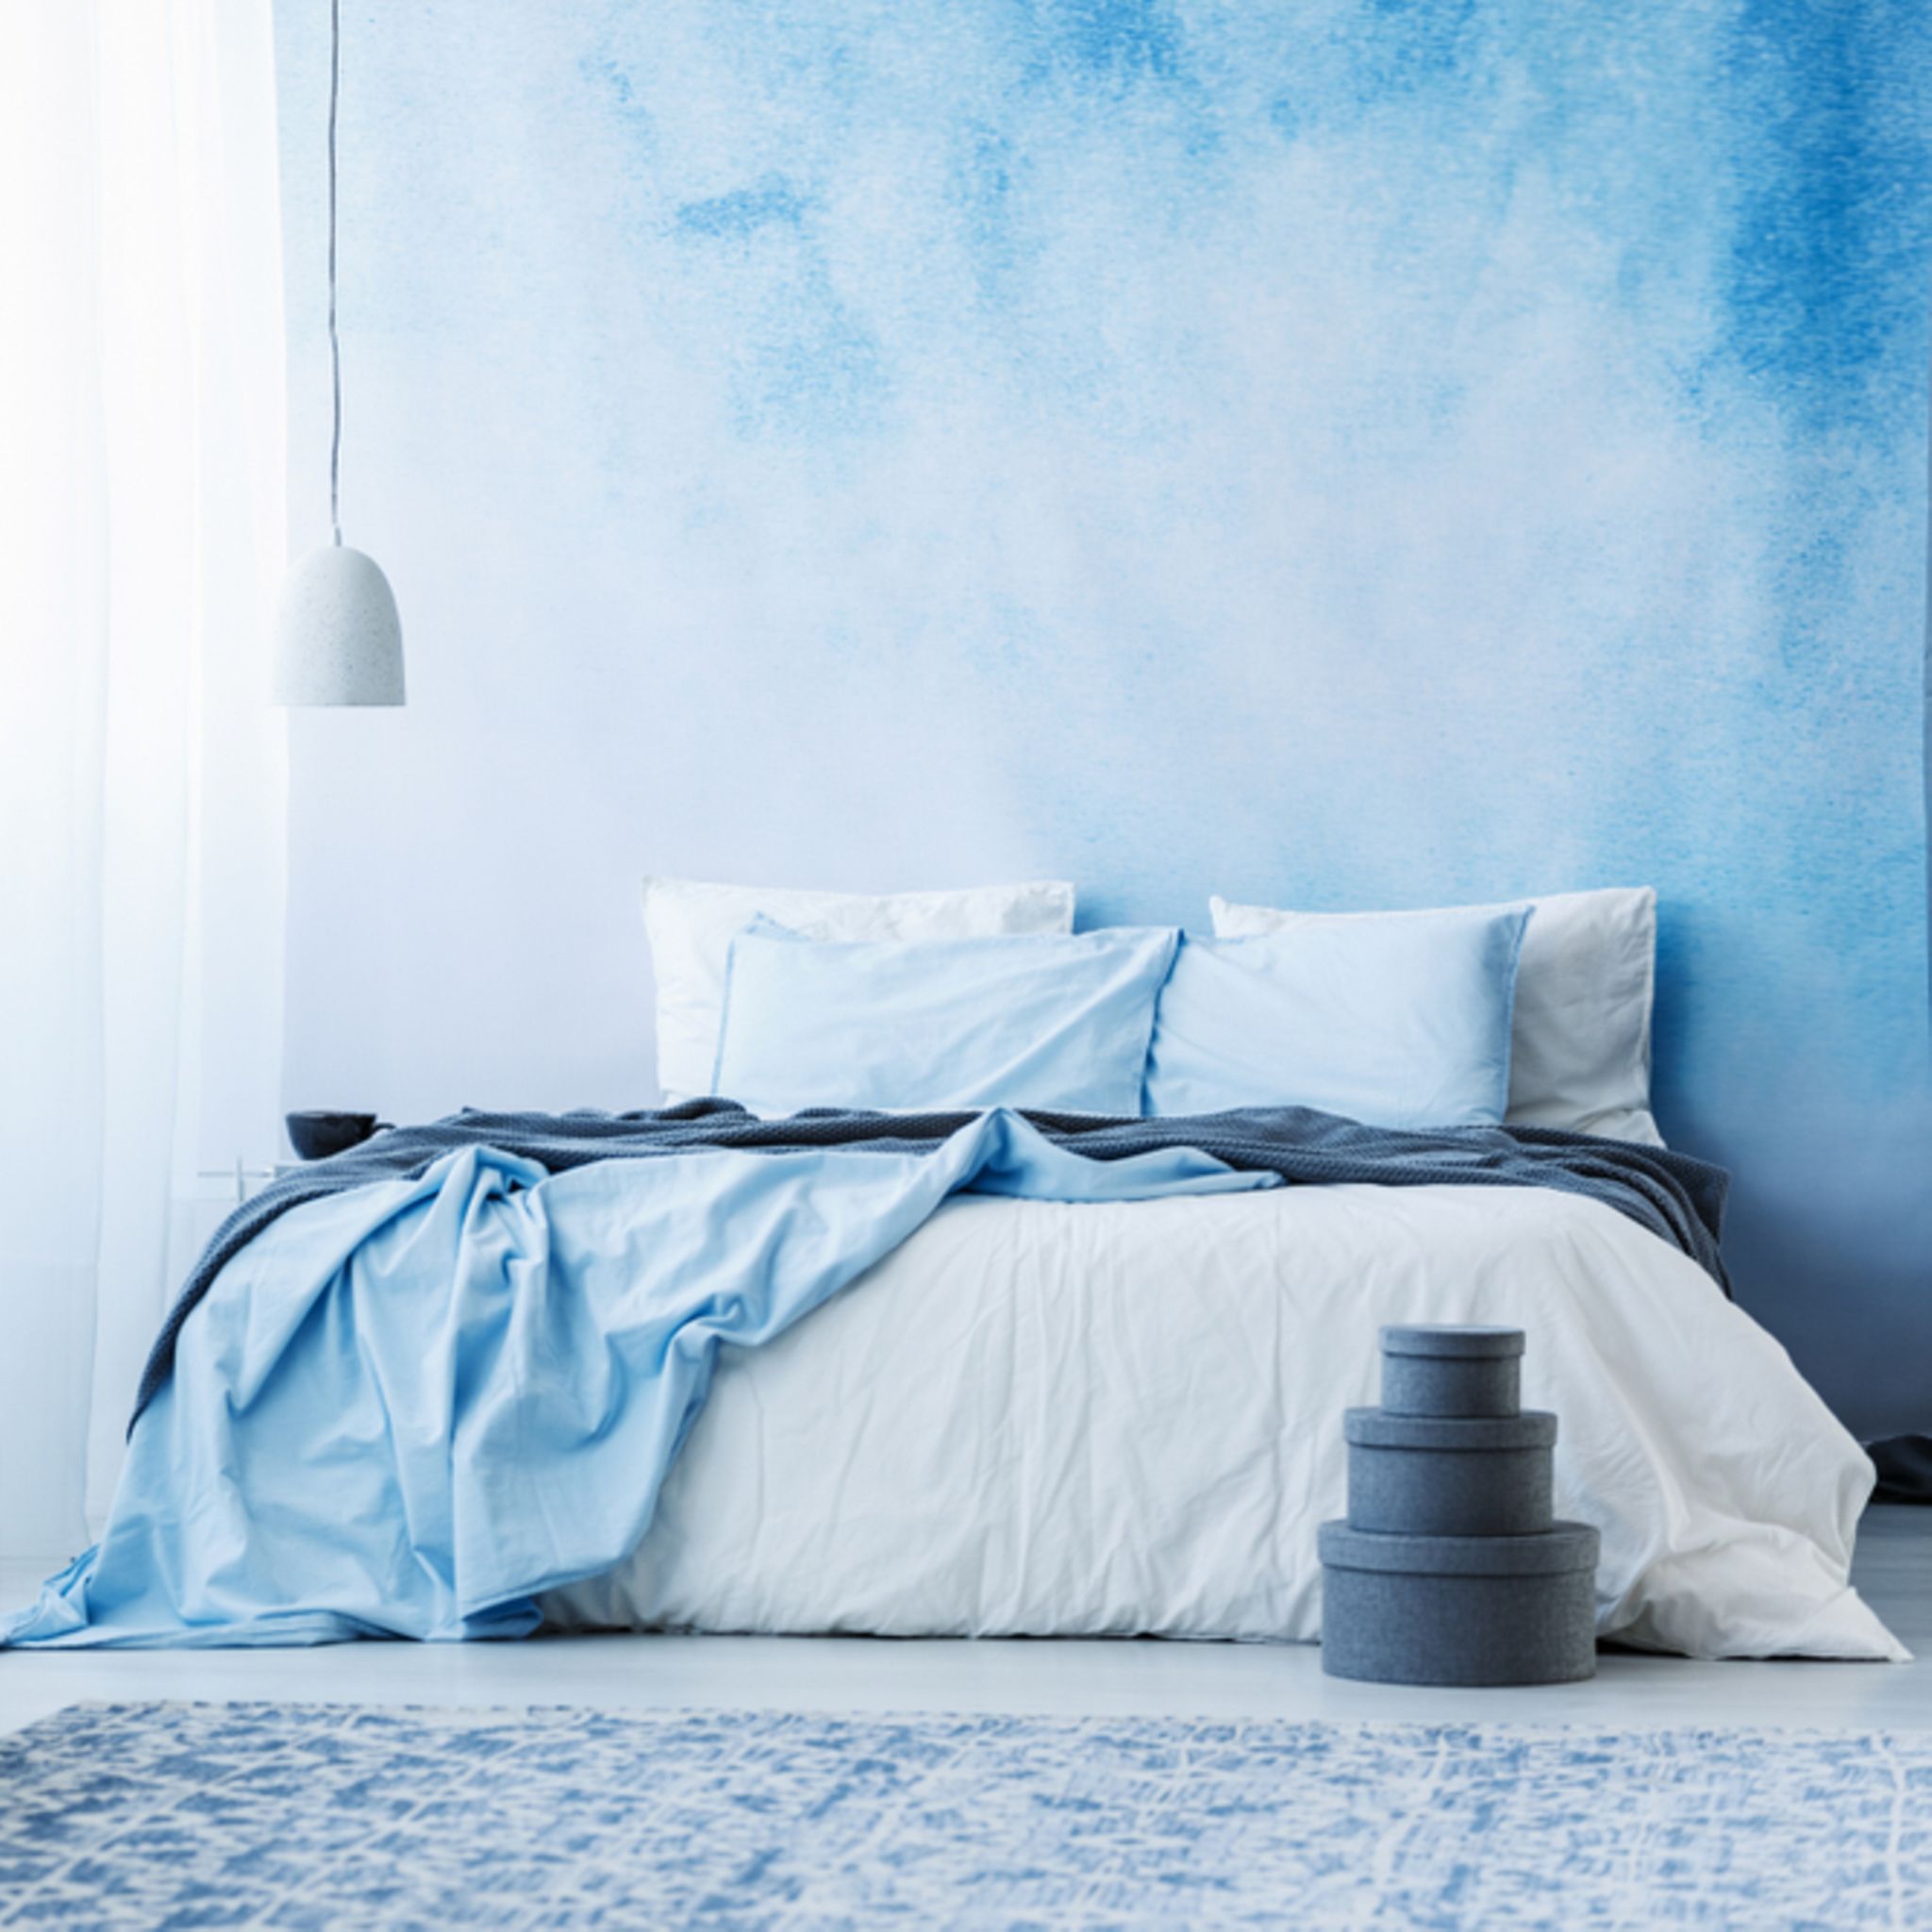 wandgestaltung schlafzimmer: 6 kreative ideen | brigitte.de